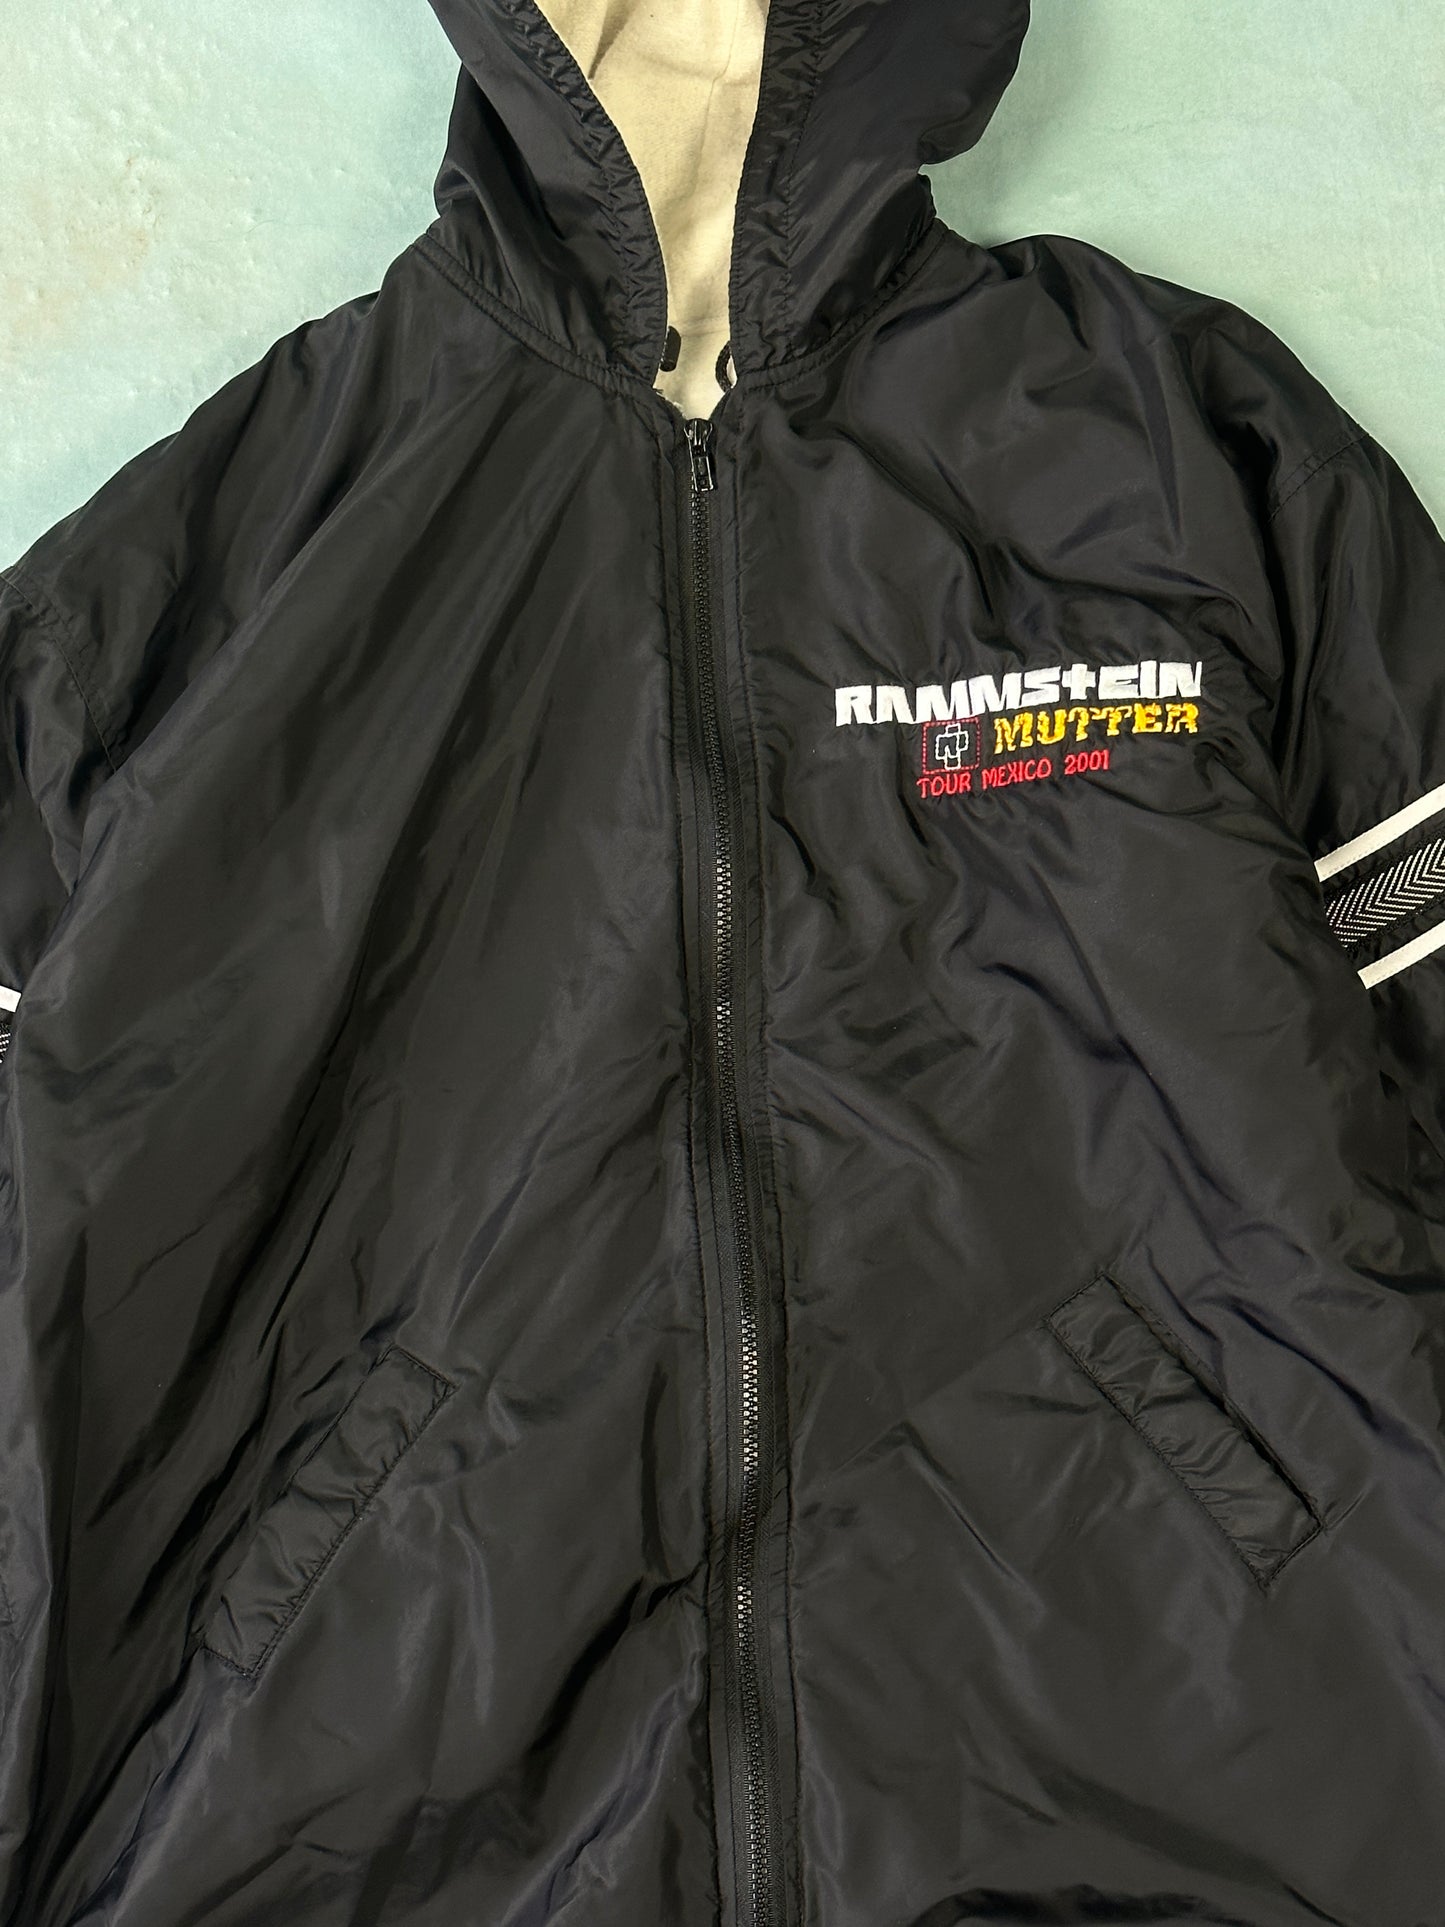 Rammstein 2001 Mexico Tour Vintage Jacket - XL